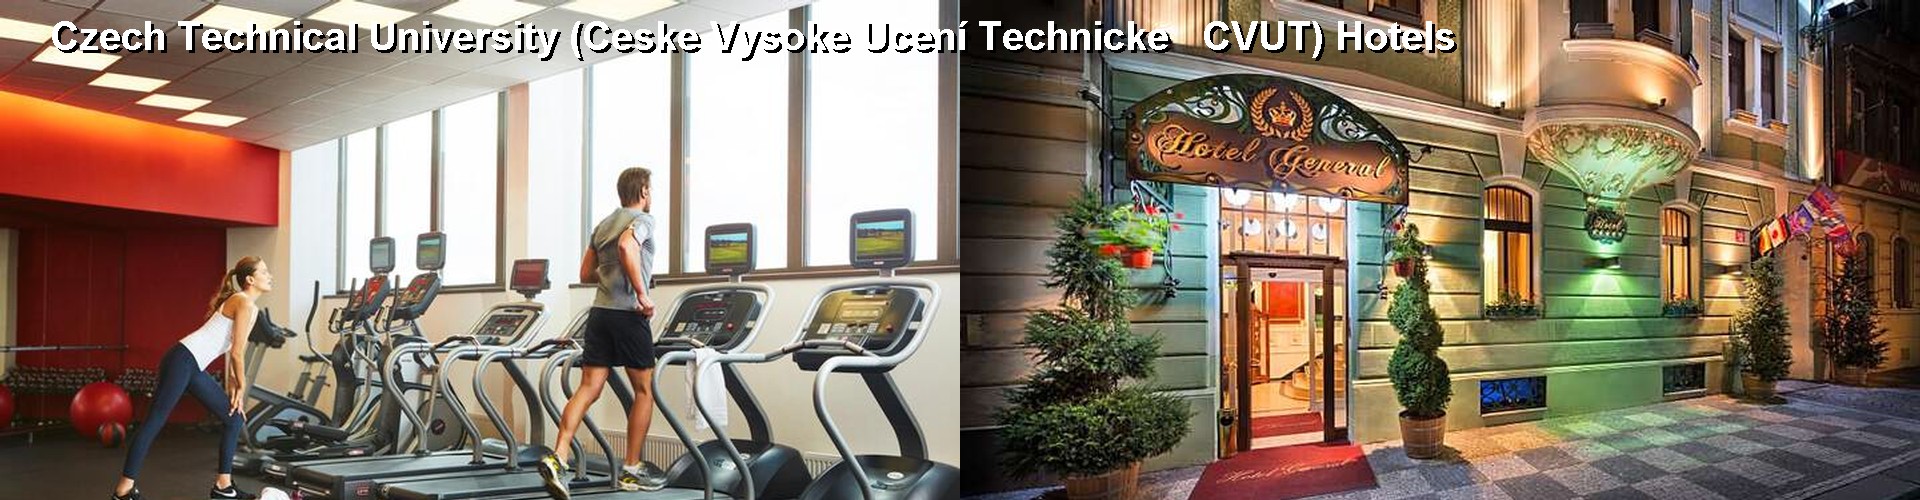 5 Best Hotels near Czech Technical University (Ceske Vysoke Ucení Technicke   CVUT)